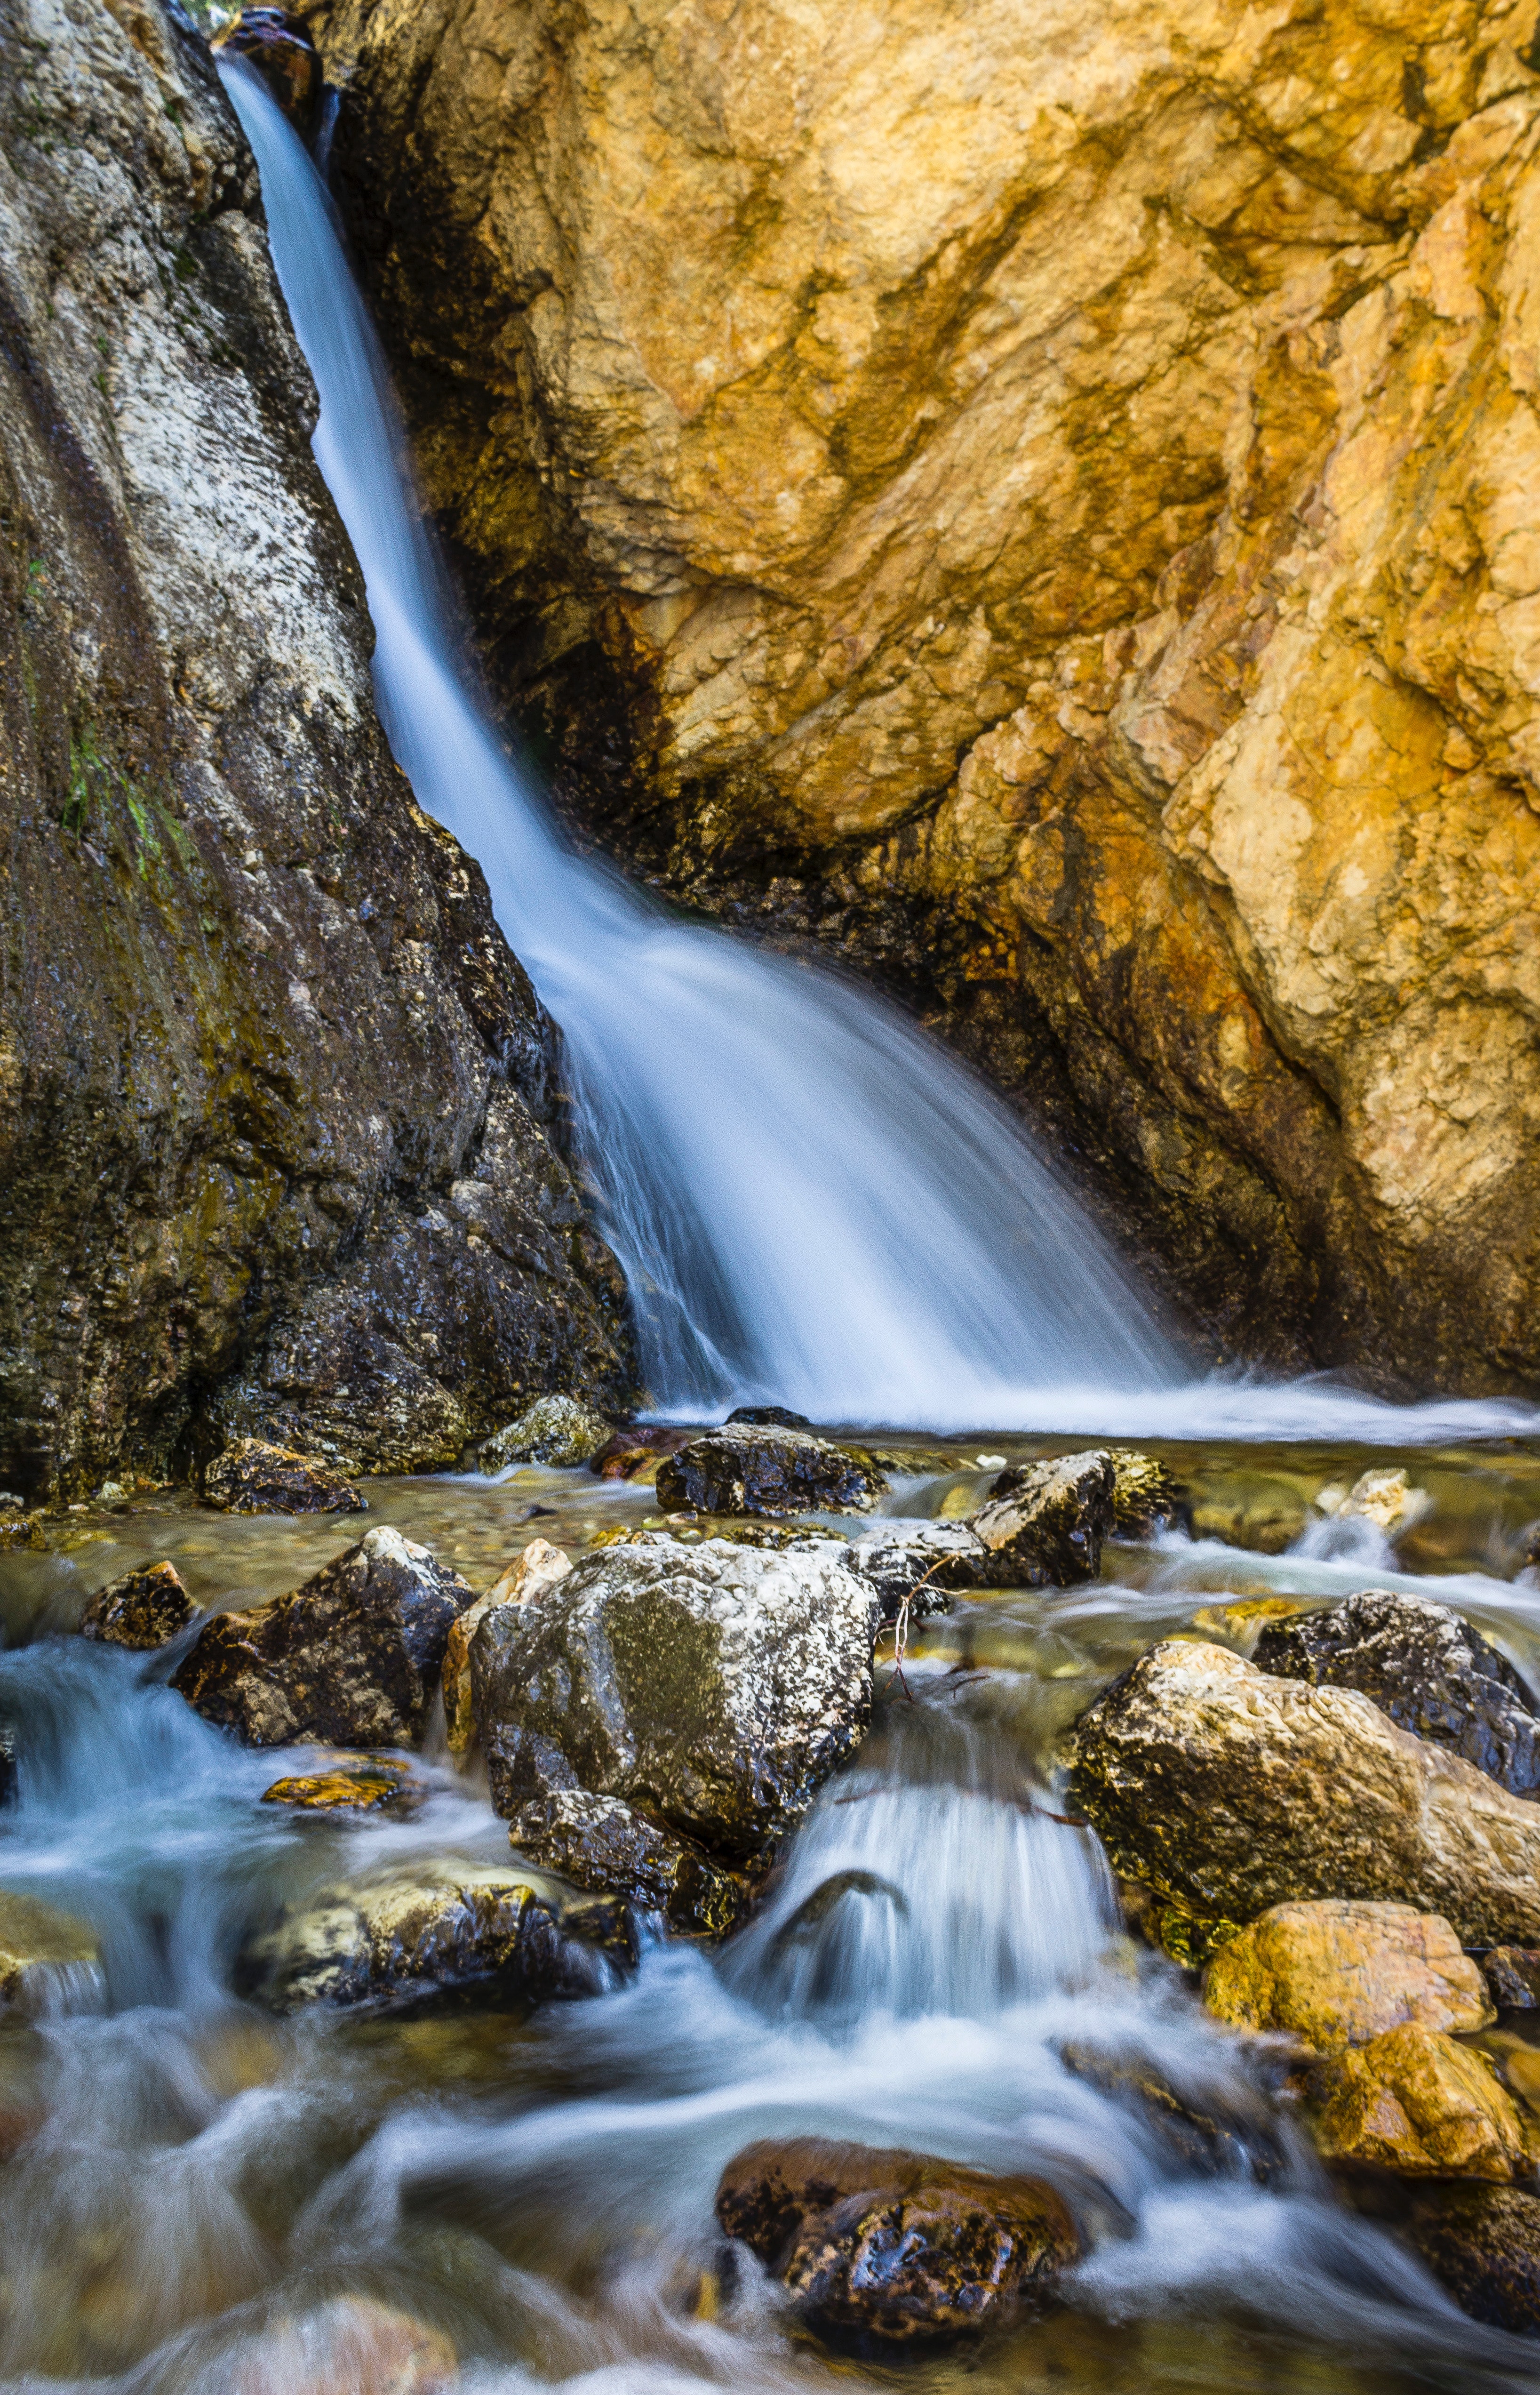 Water Stream Between Brown Rocks, Creek, Rocks, Wet, Waterfalls, HQ Photo